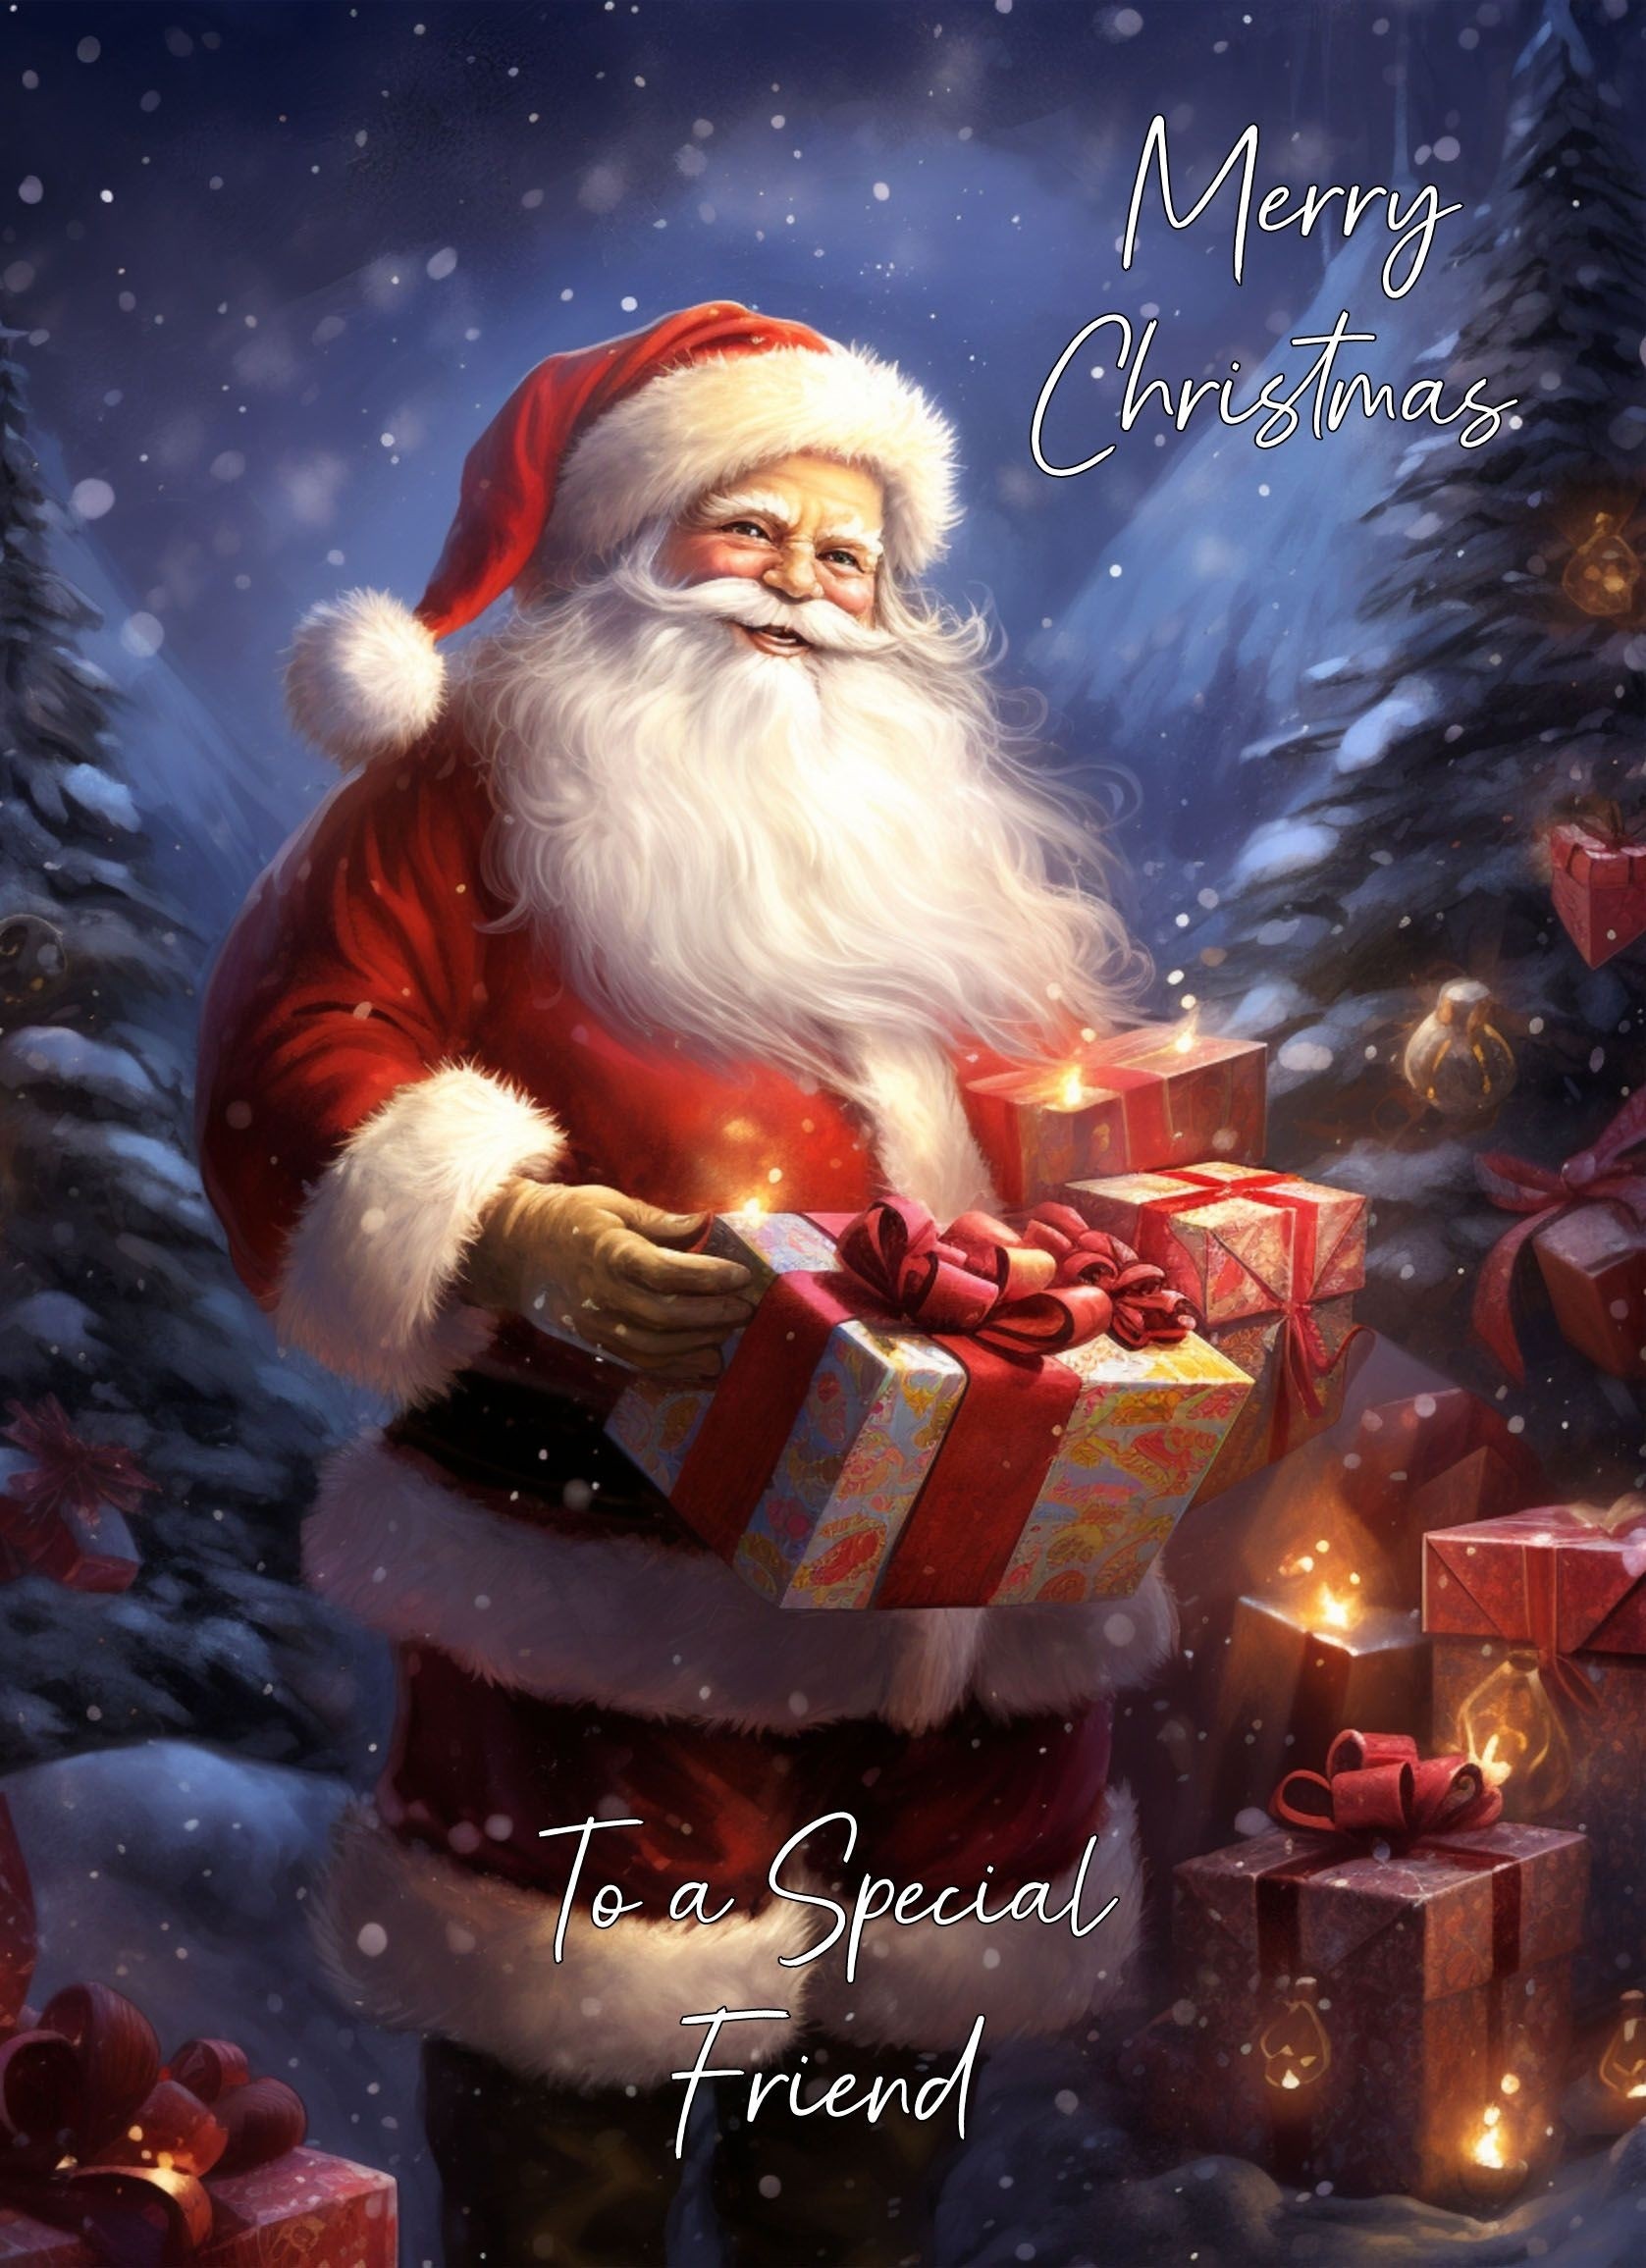 Christmas Card For Friend (Santa Claus)